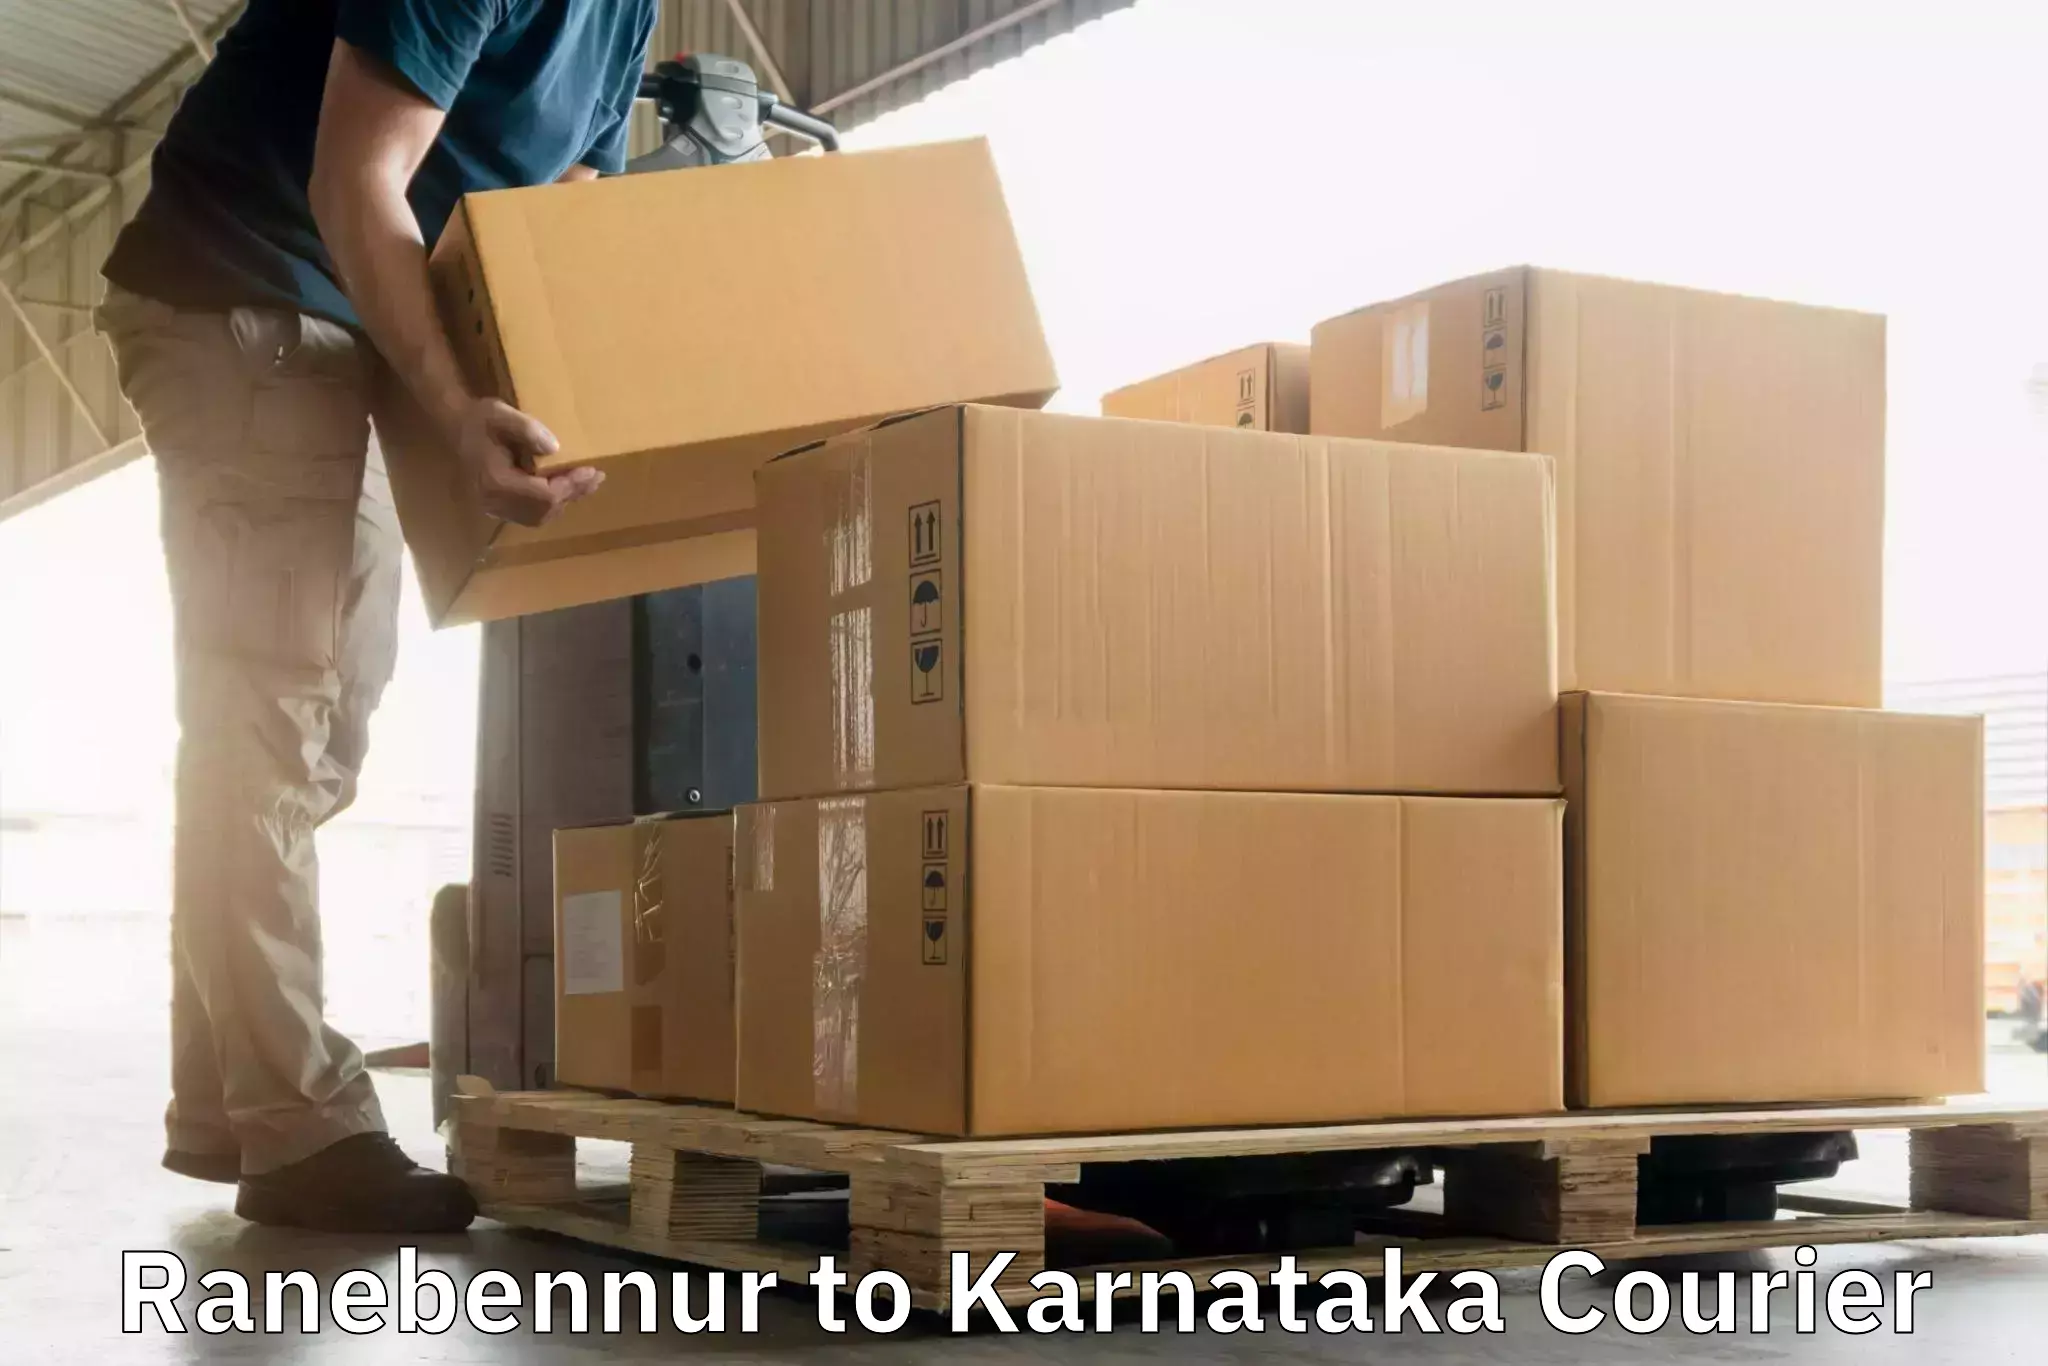 Global courier networks Ranebennur to Krishnarajanagara